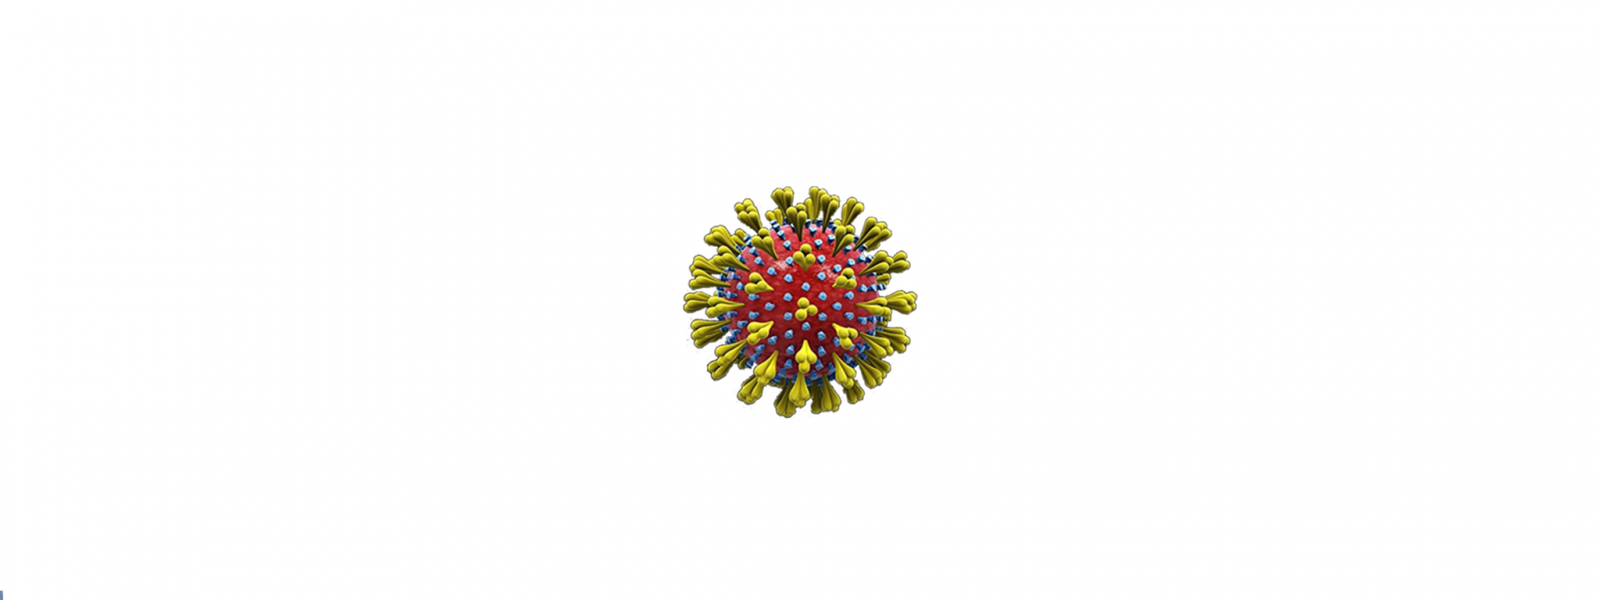 Coronavirus. L’aggiornamento settimanale in Emilia-Romagna: dal 17 al 23 marzo 1.501 nuovi casi, quasi 1.800 guariti. In calo i ricoveri nei reparti Covid (-13) e nelle terapie intensive (-2)